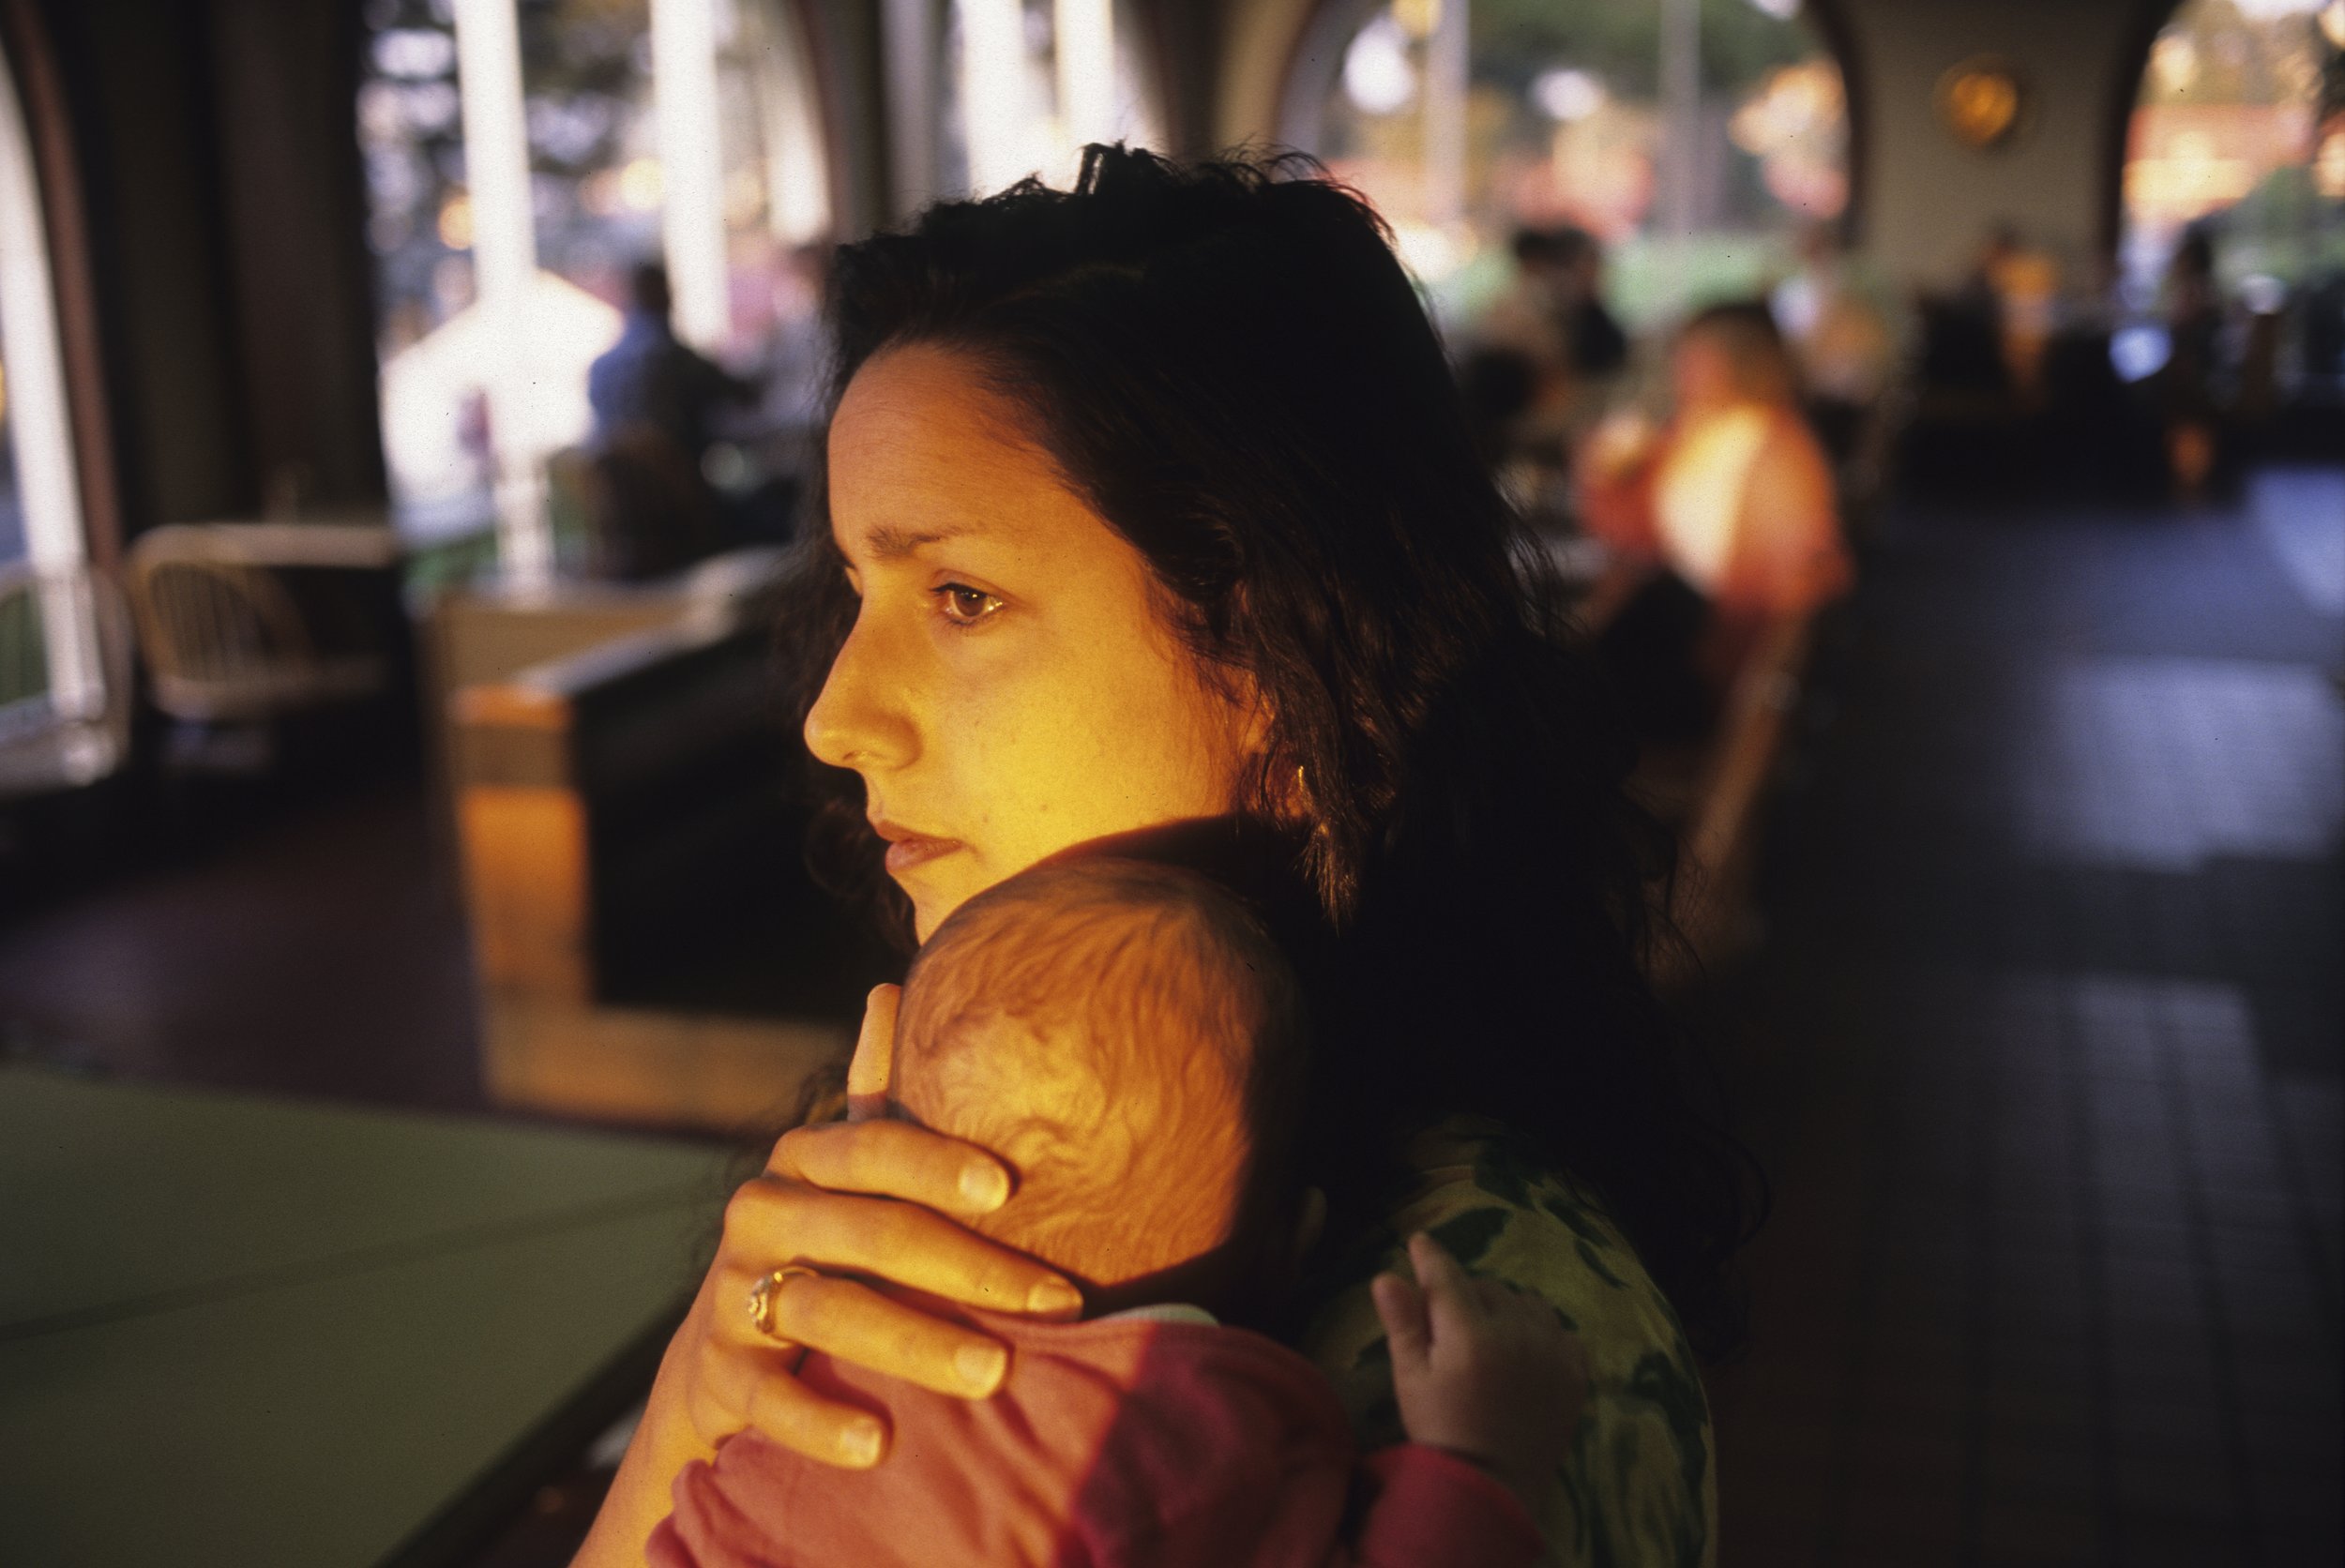  Julie Winokur holding our newborn son Elijah in San Francisco. 1995 